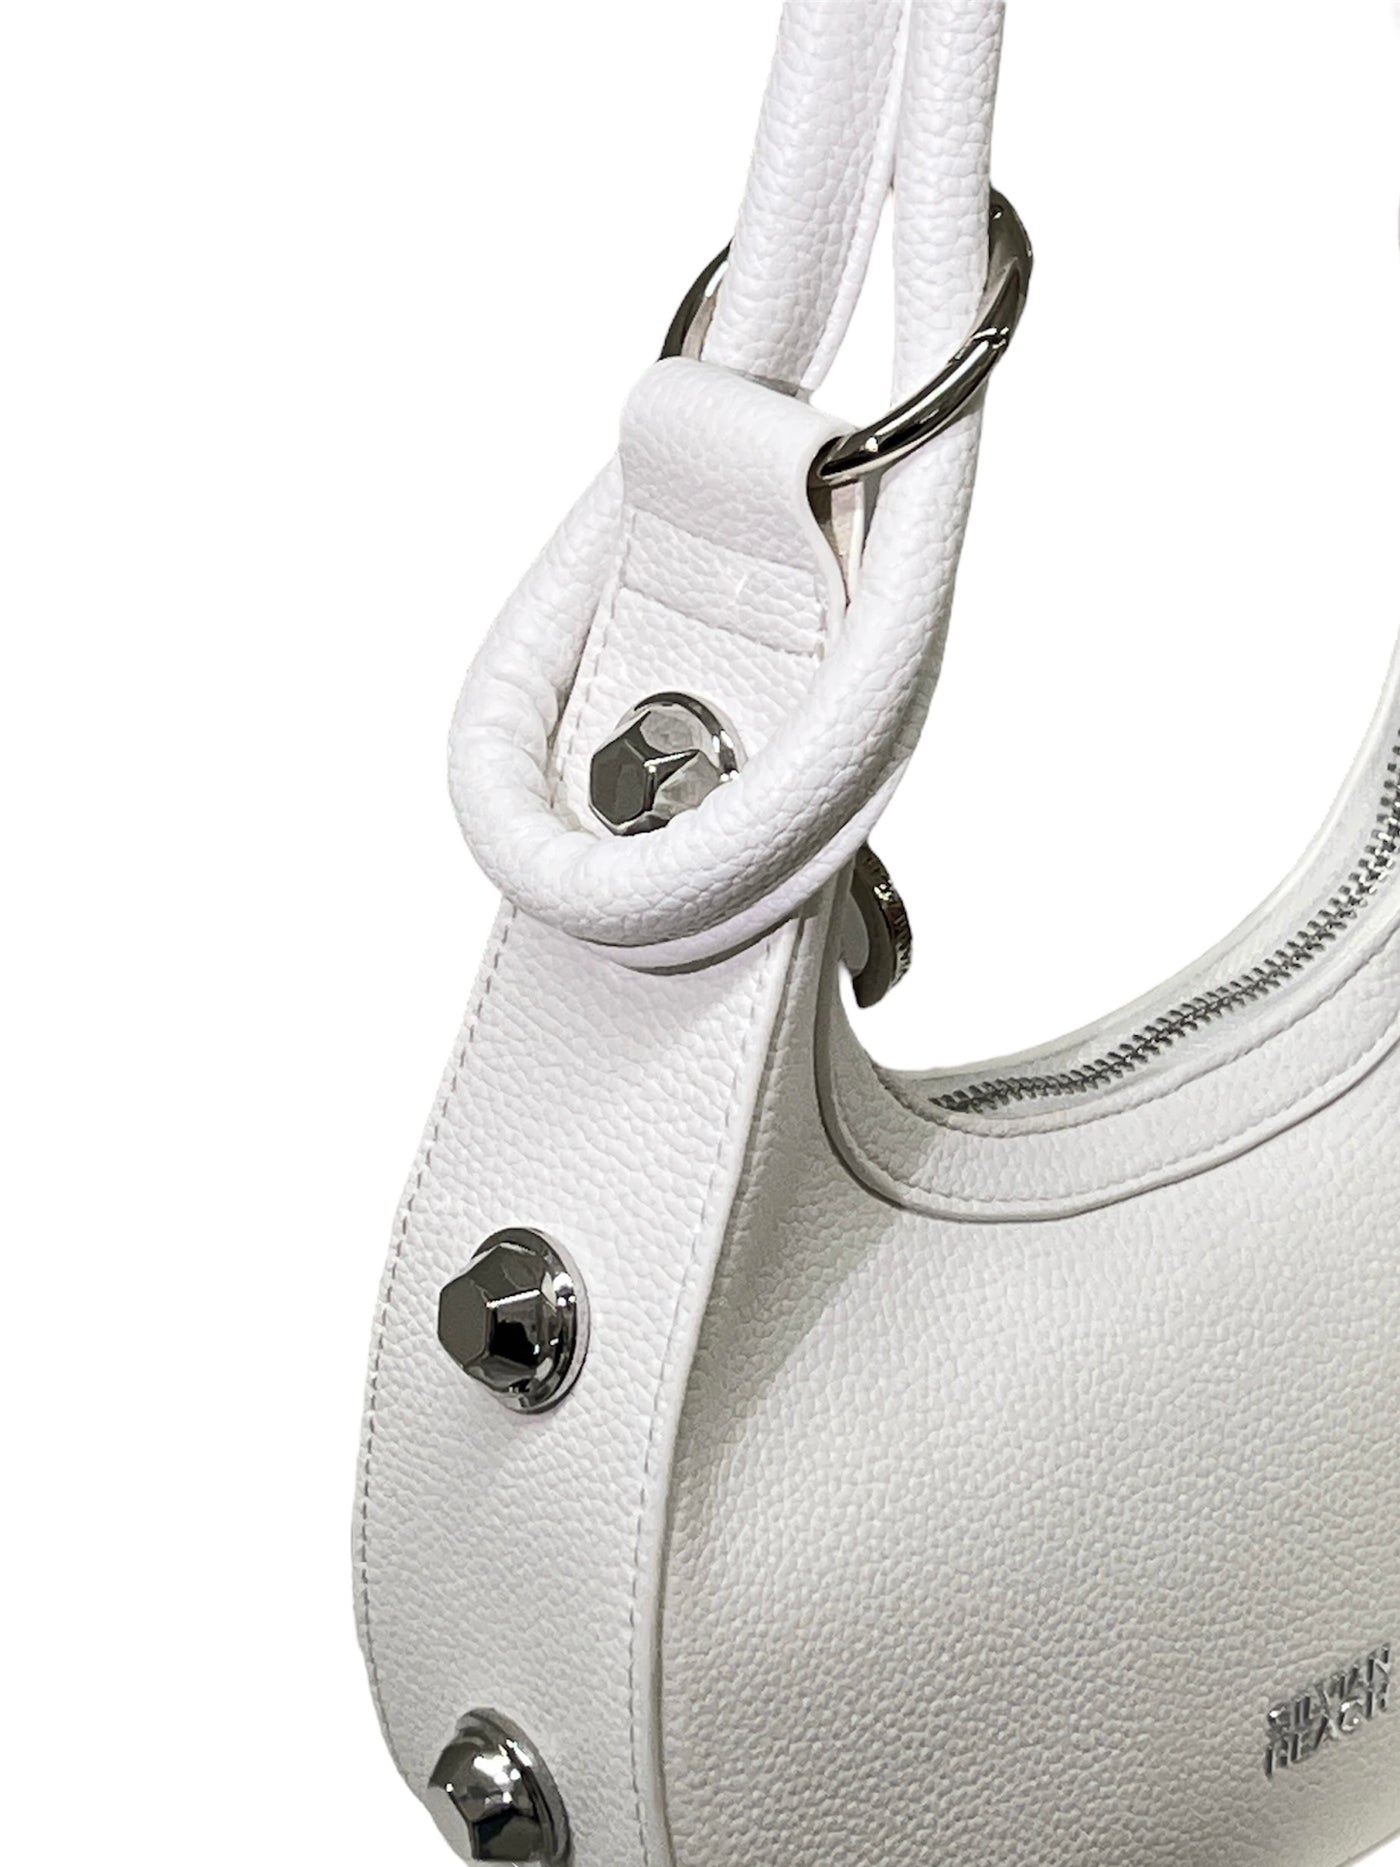 White Handbag With Silver Studs & Shoulder Strap Detailing